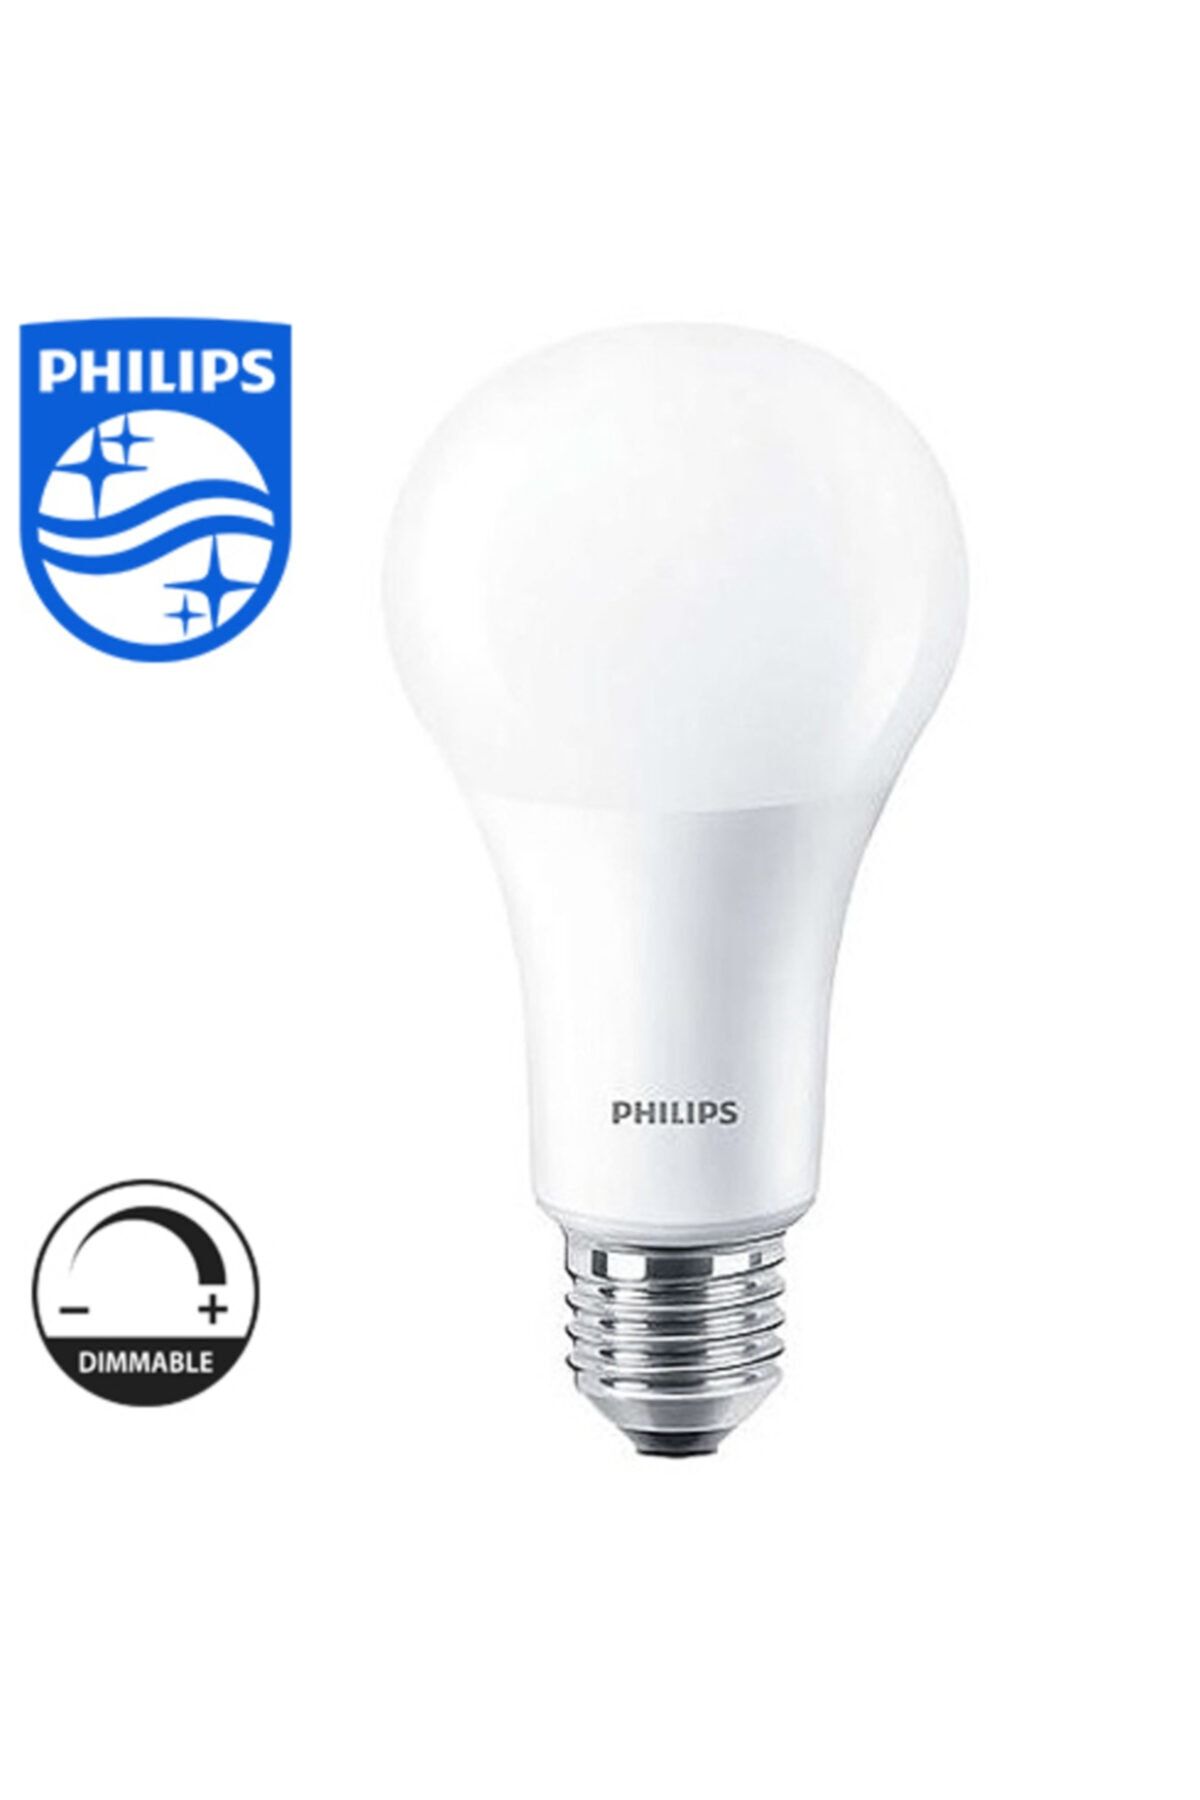 Philips 15w-100w Master Led/dim Edilebilir Ampul/ Sarı Işık (2200k-2700k) Dimtone/ 1521 Lumen